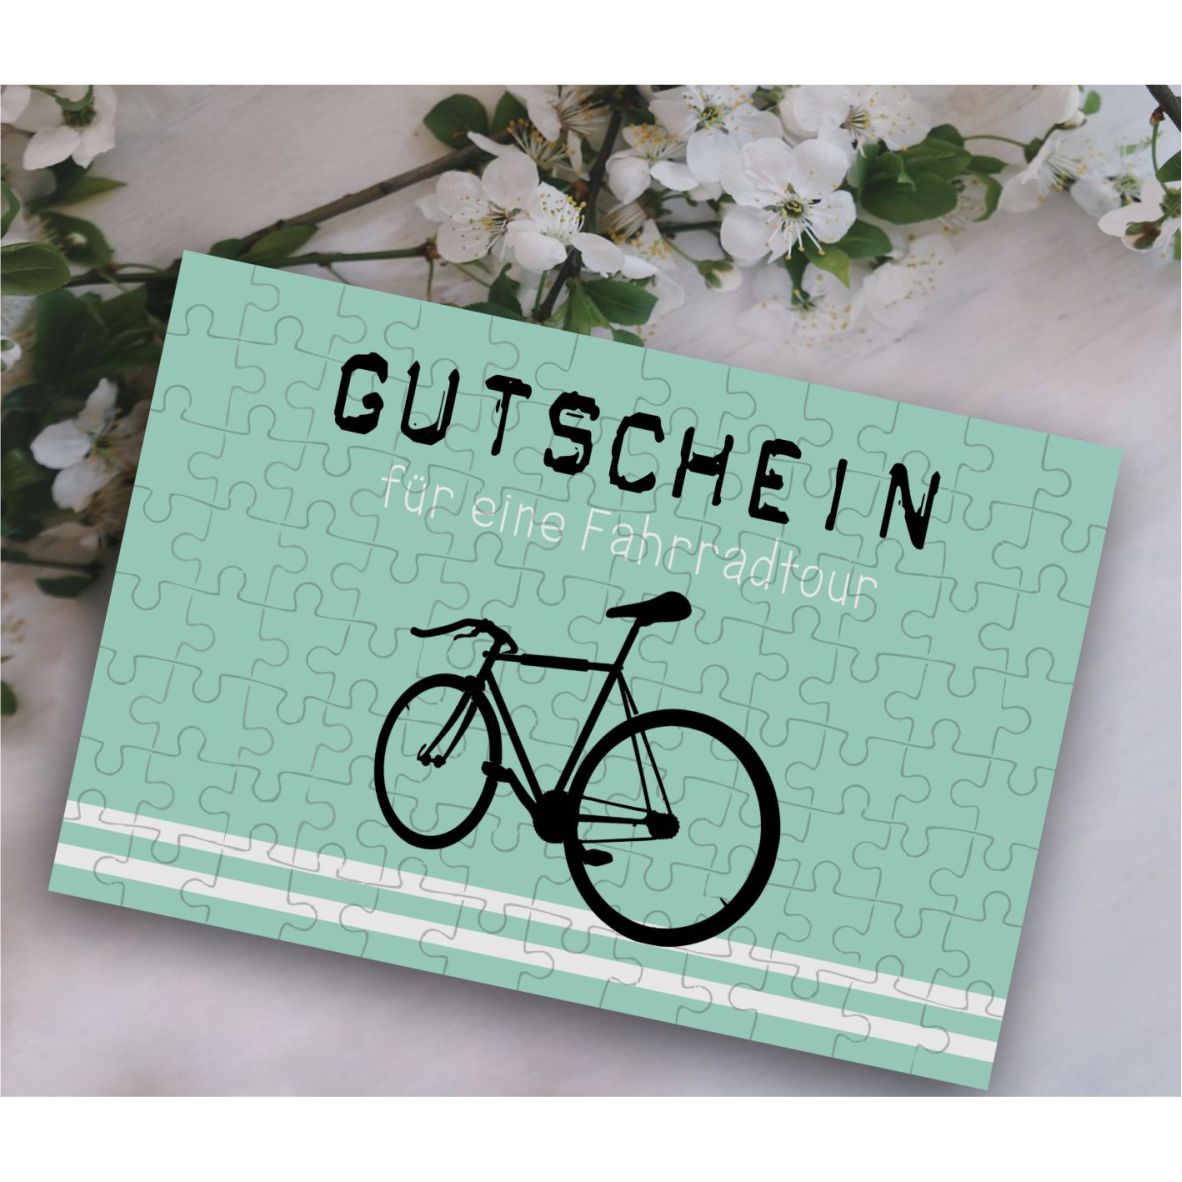 Puzzle-Gutschein mint "Fahrradtour" inkl Stoffbeutel "Frohe Weihnachten"